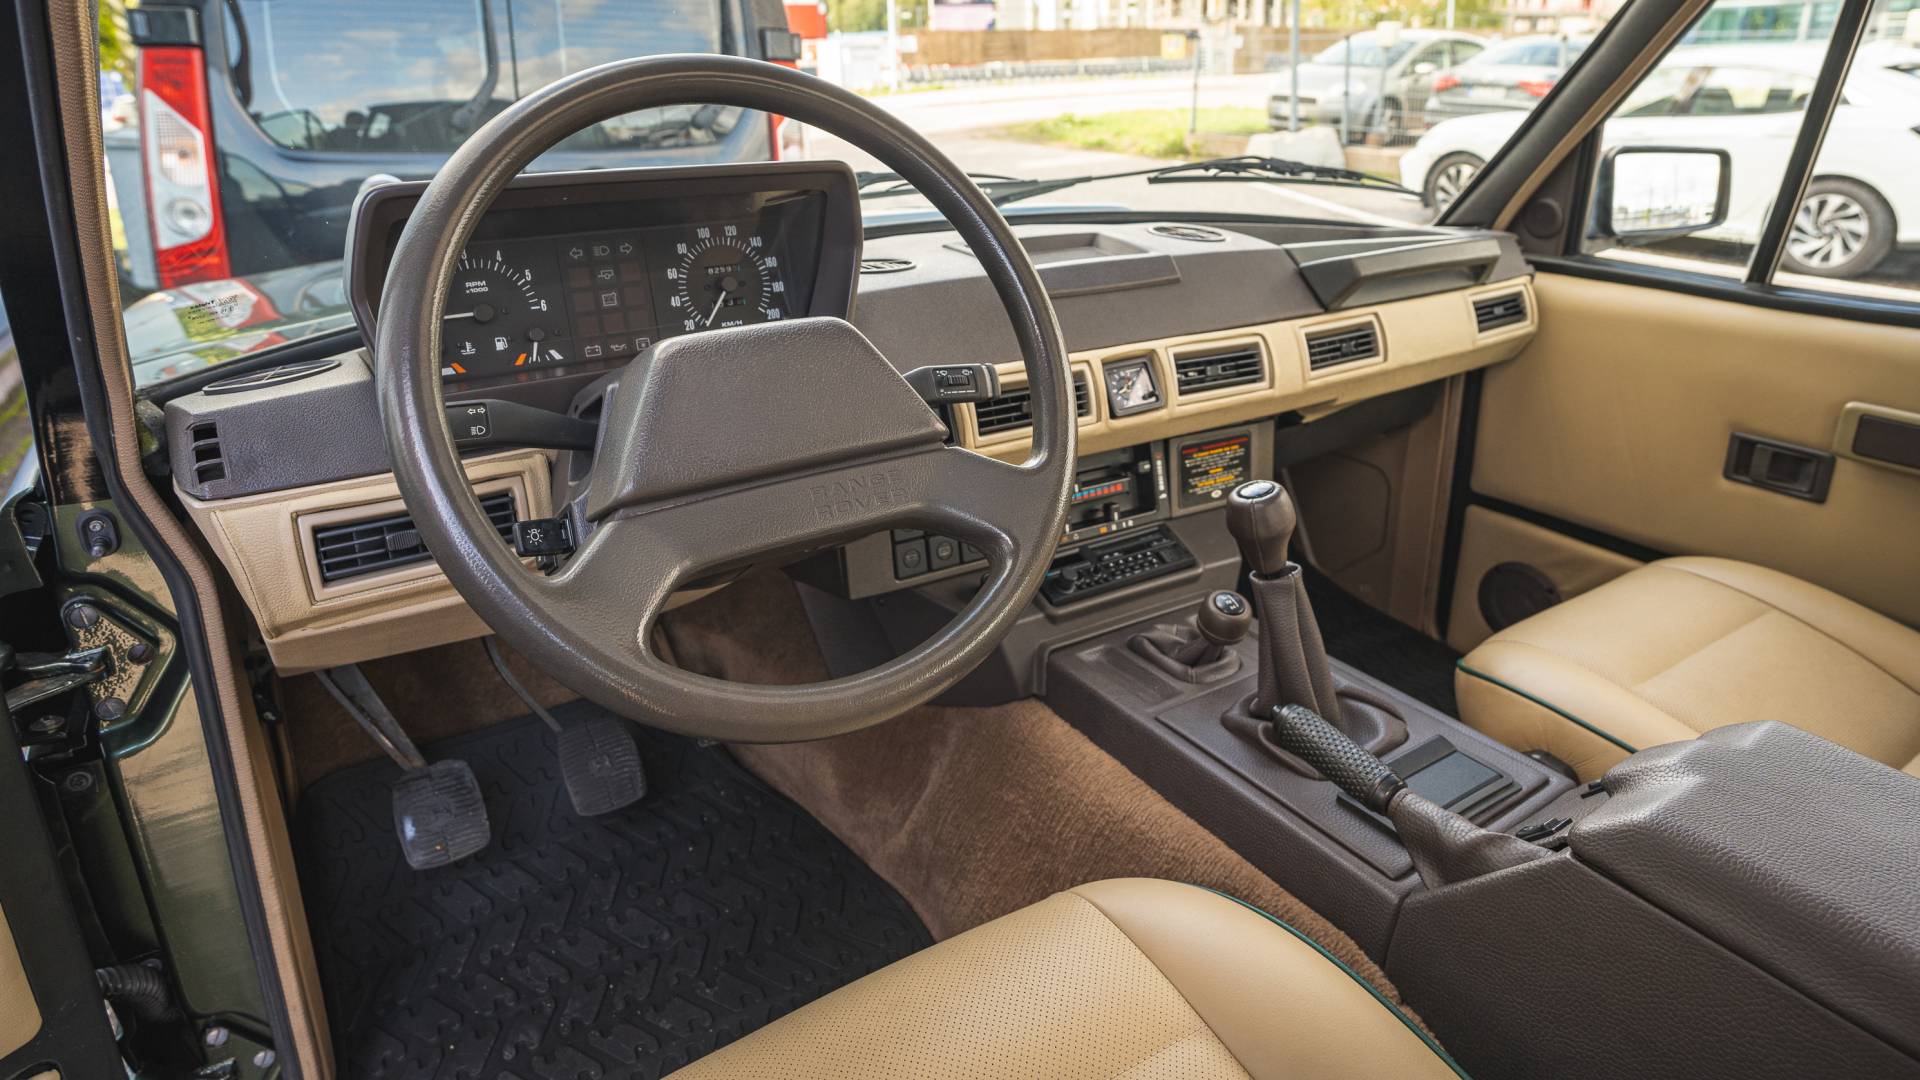 Range Rover Classic Interior Restoration